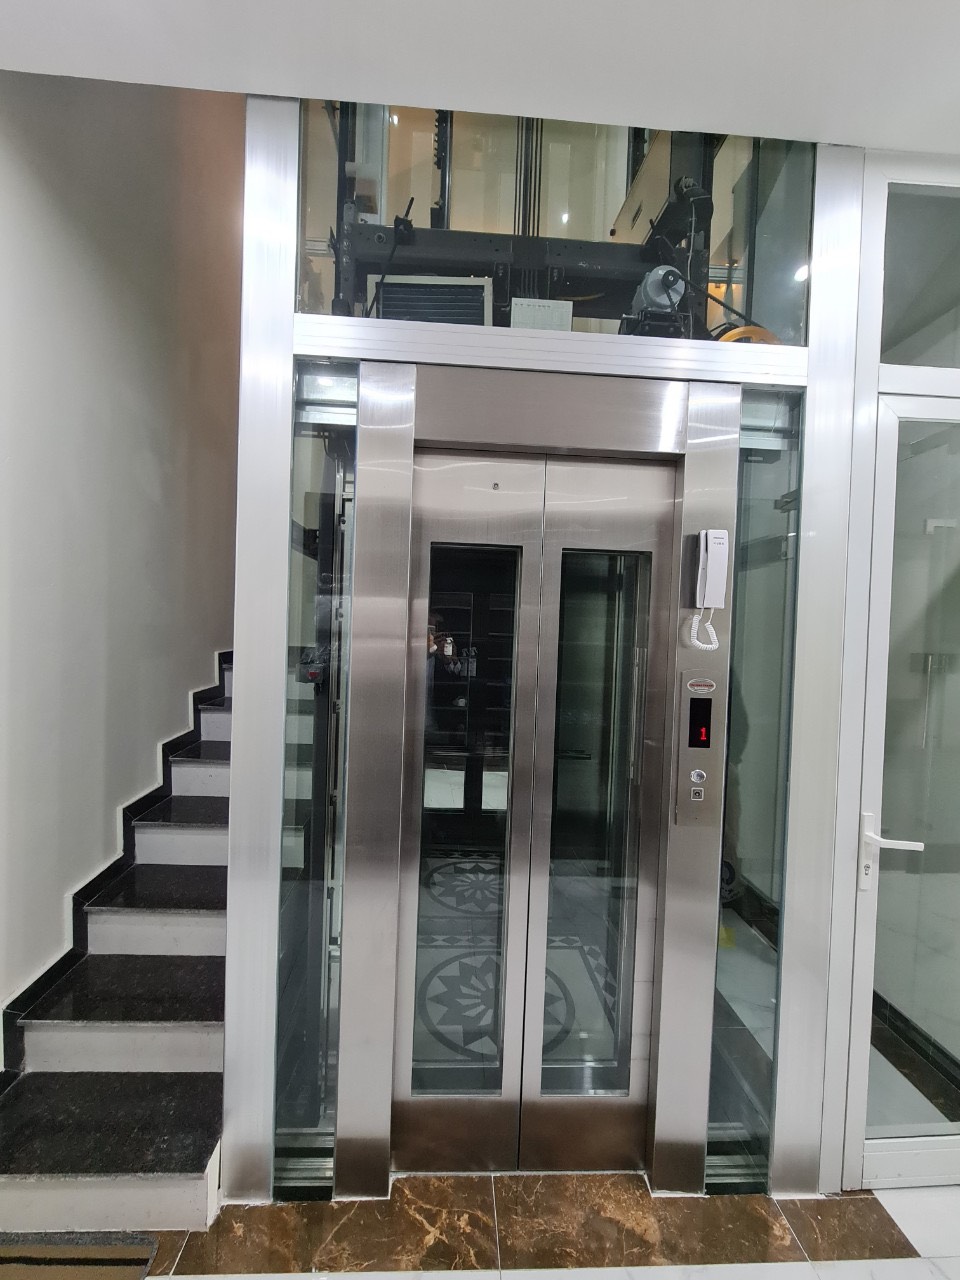 Để đảm bảo an toàn trong việc sử dụng thang máy, cần phải nắm rõ 7 sự cố thường gặp khi đi thang máy và biết cách tránh những trường hợp này.